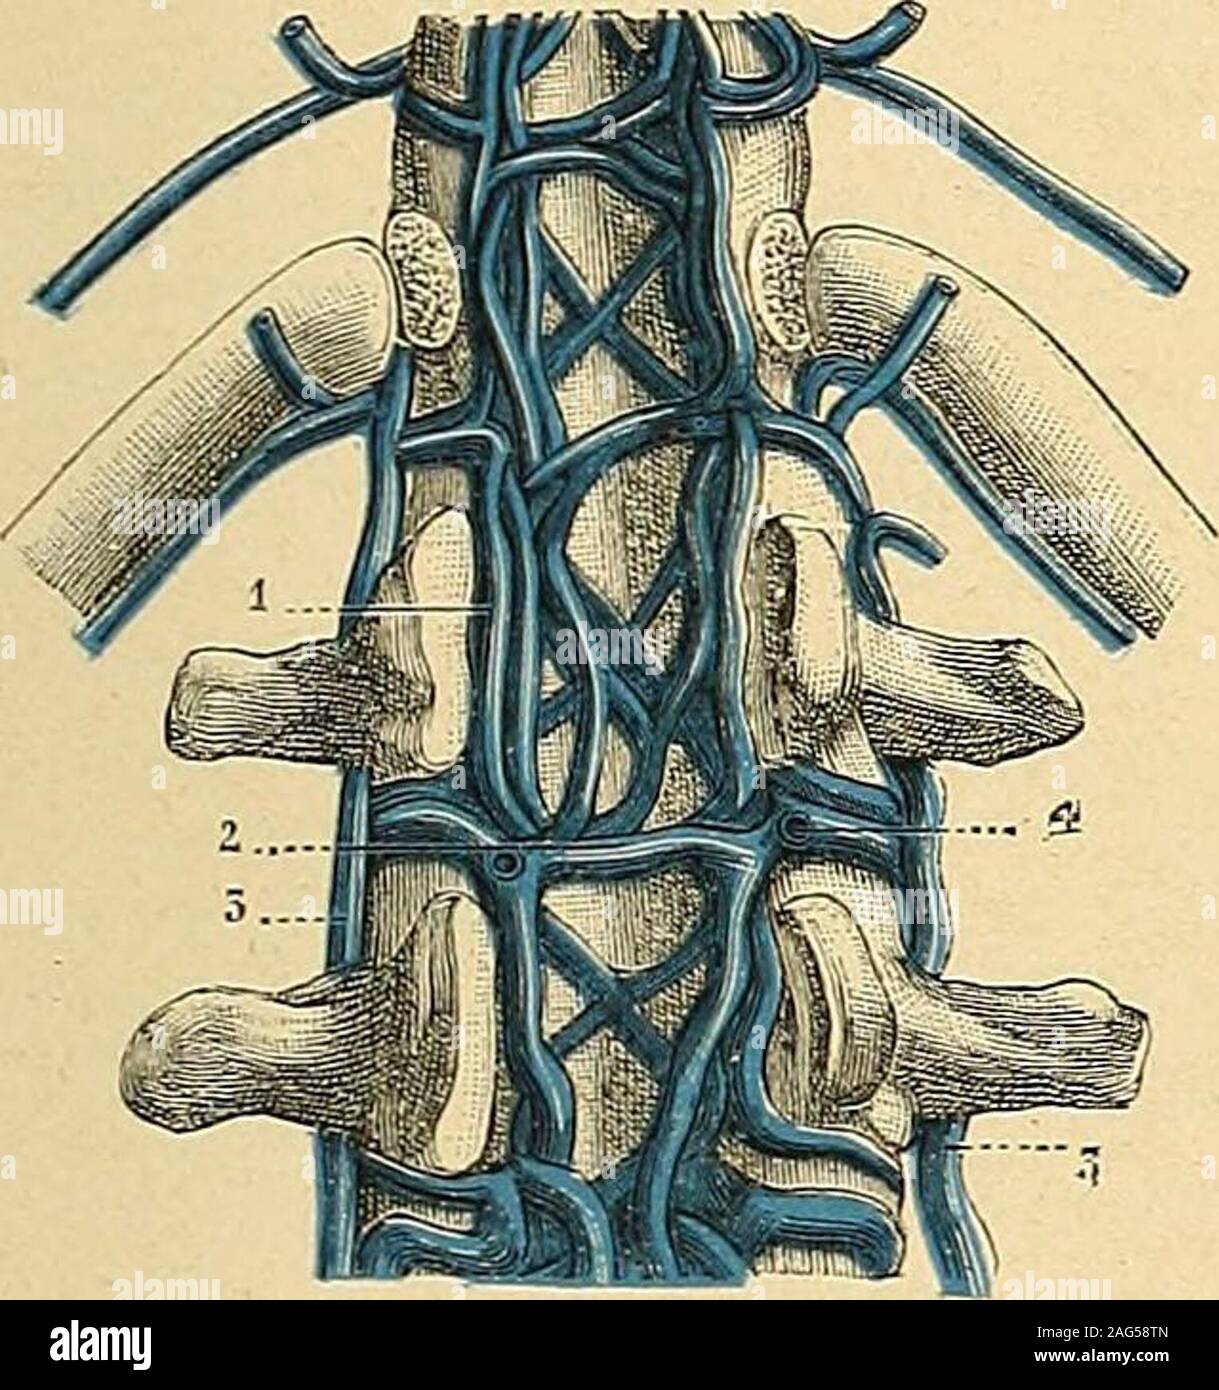 . Traité d'anatomie humaine : anatomie descriptive, histologie, développement. ntercostales. b. Leurs anastomoses. — Les quatre VEINES DU HACHIS 1113 décrire, presque toujours multiples et même plexiformes, sont reliées entre ellespar des anastomoses nombreuses, tellement nombreuses parfois, quelles trans-forment la circulation intra-rachidienne en un véritable plexus. Cest ainsi quauniveau de chaque vertèbre, les deux veines longitudinales antérieures sont réunieslune à lautre par une anastomose transversale, située entre le corps de la ver-tèbre et le ligament vertébral commun postérieur. De Stock Photo